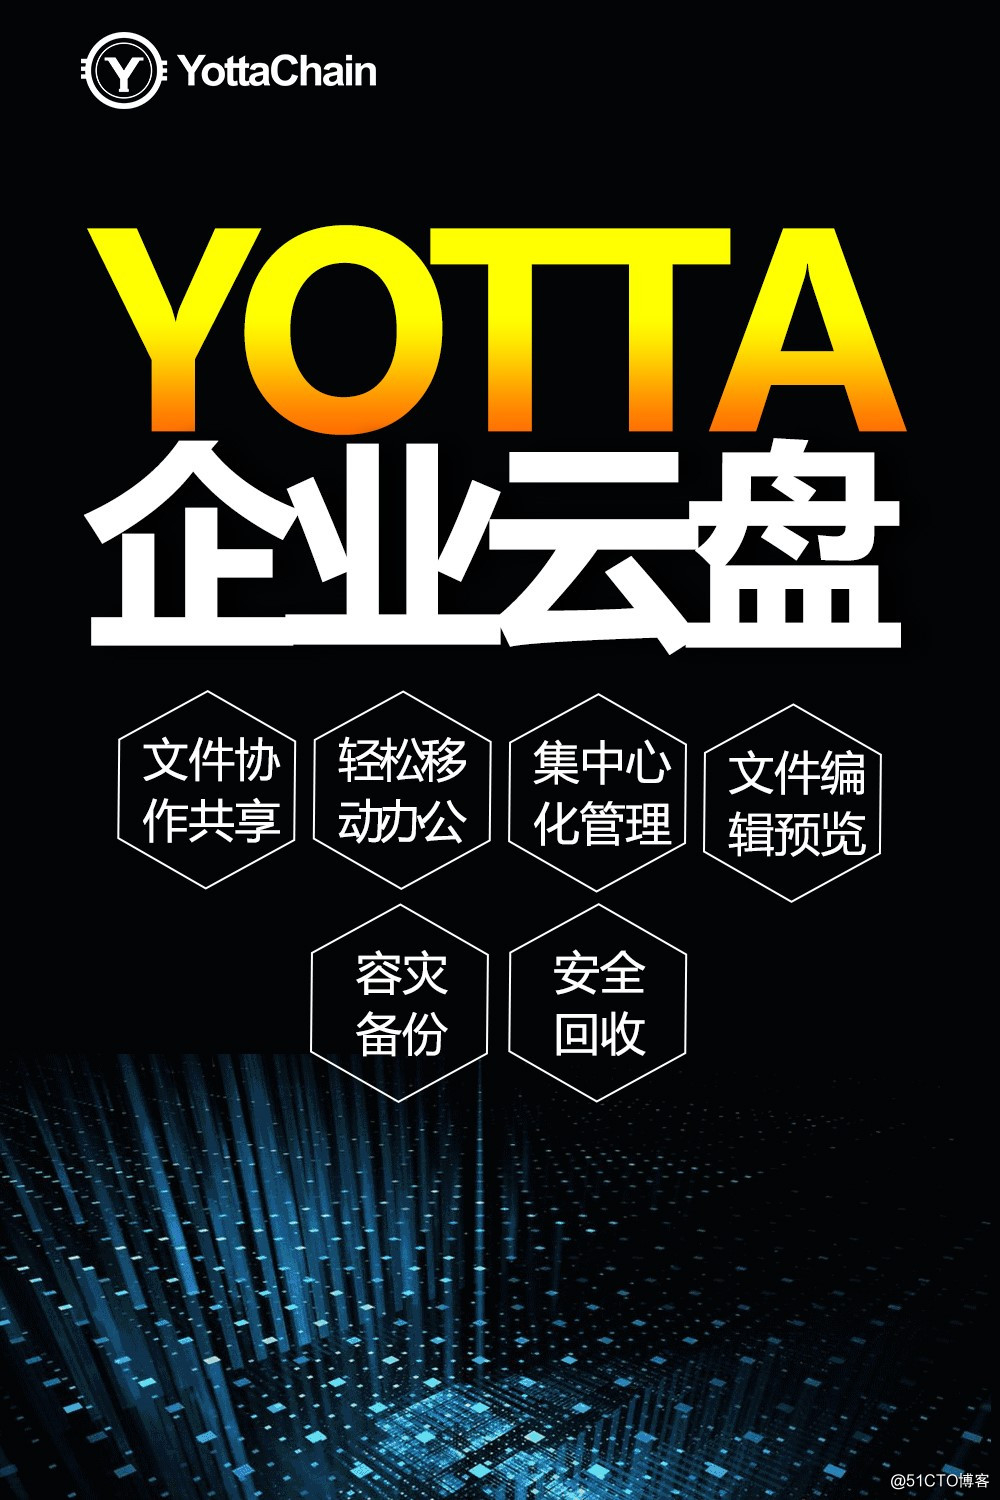 Yotta企业云盘助力对零售行业发展